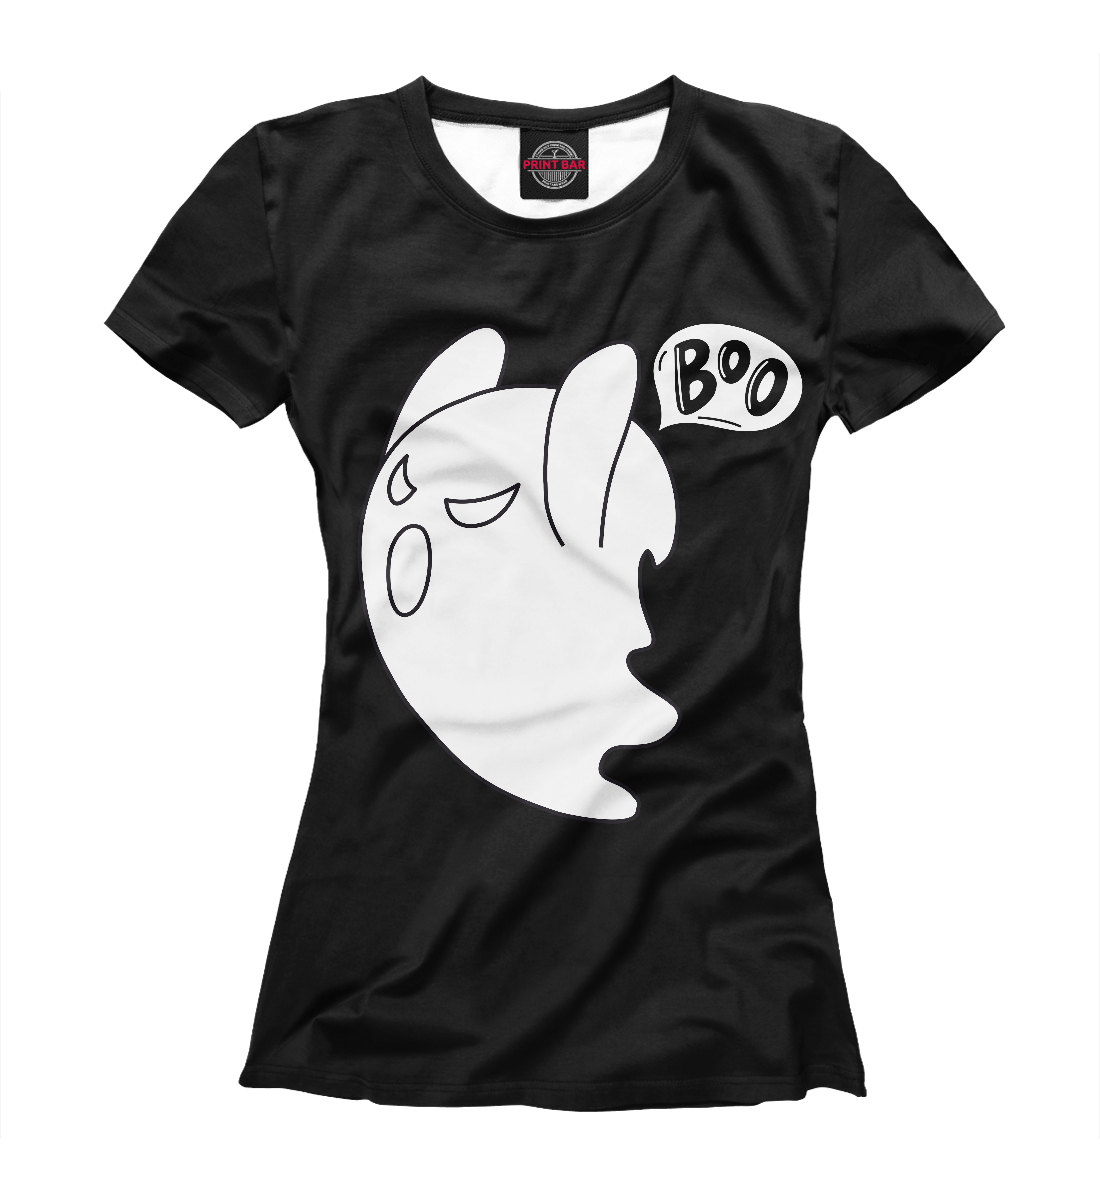 Футболка Boo Ghost \ Привидение Бу для женщин, артикул: HAL-747144-fut-1mp